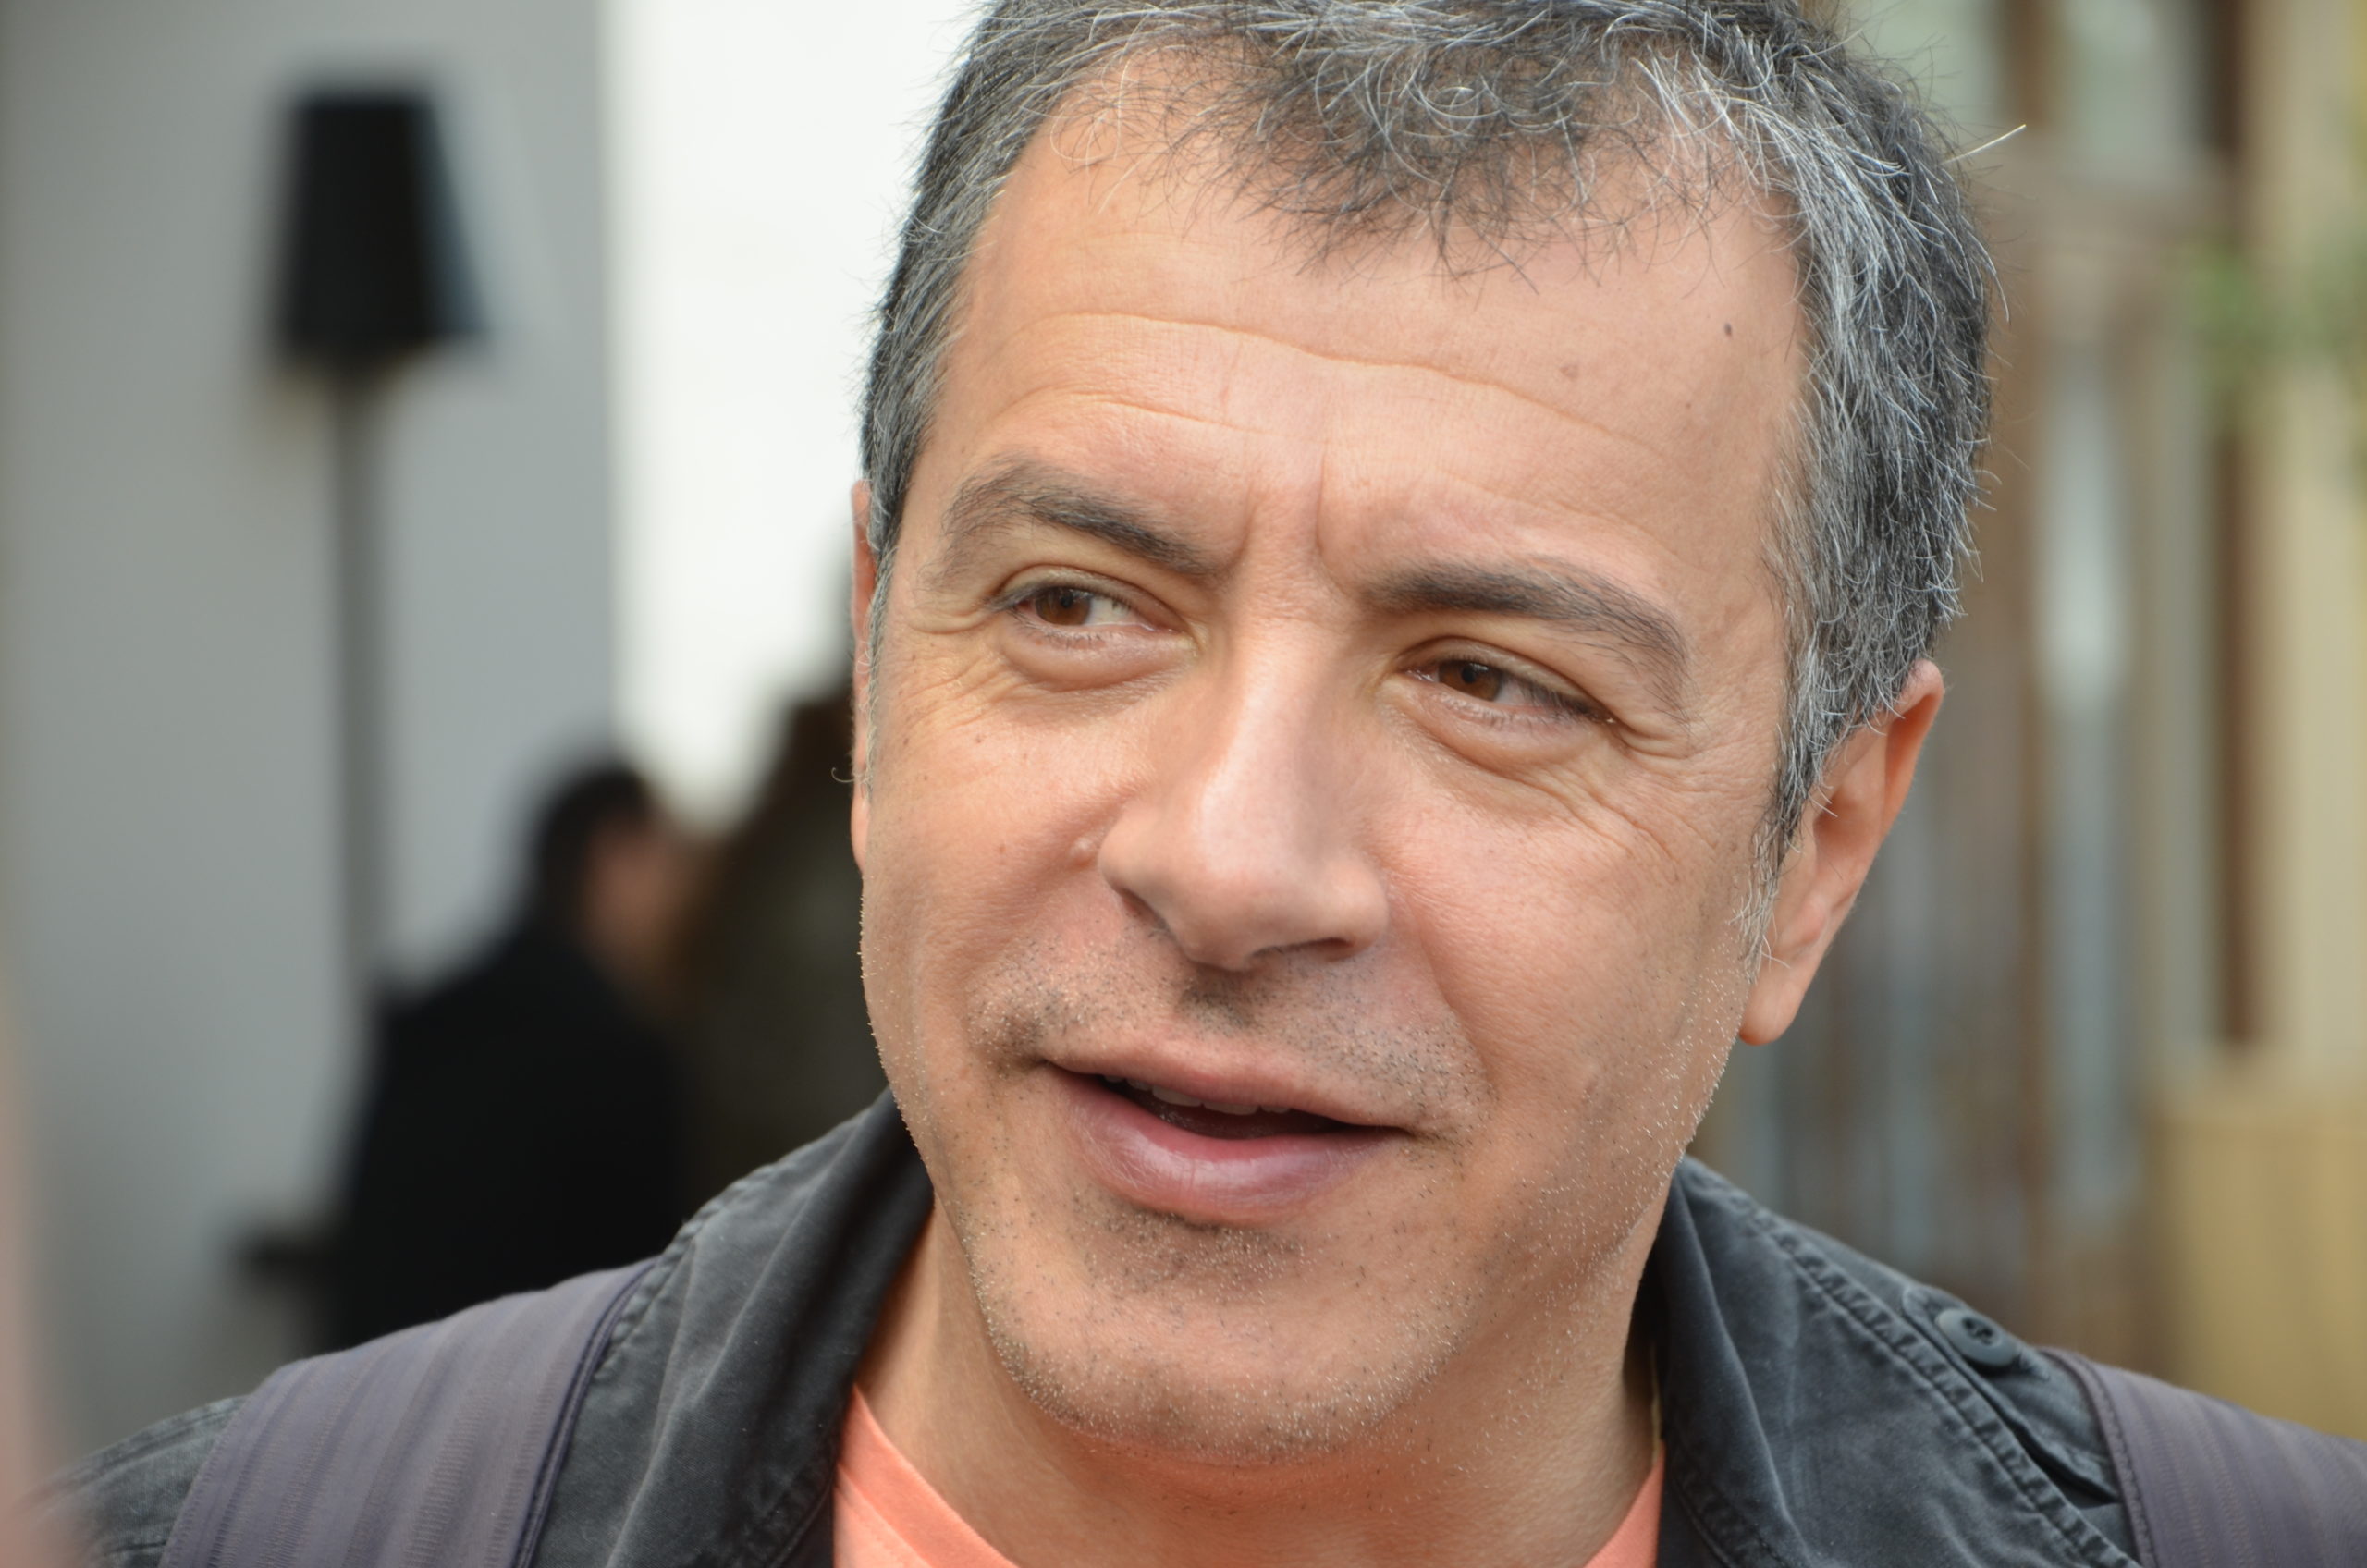 Θεοδωράκης: Στελέχη και δημοσιογράφοι του ΣΥΡΙΖΑ βρίσκονται πίσω από το “Καλογρίτσας TV”